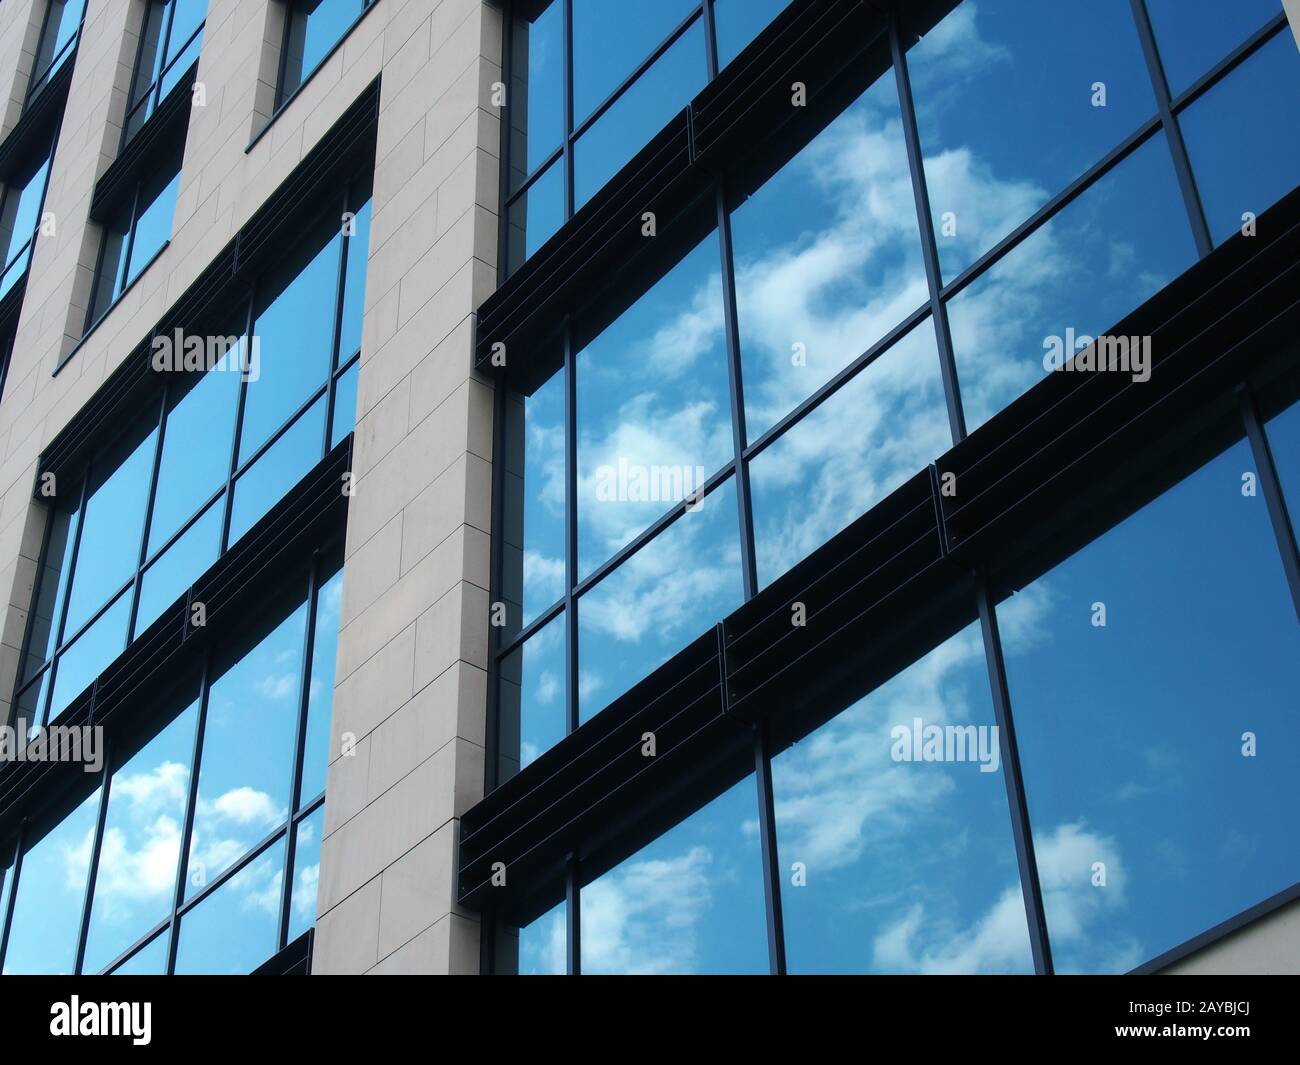 vue angulaire d'un bâtiment commercial moderne avec de grandes fenêtres en miroir reflétant le ciel bleu et les nuages blancs Banque D'Images